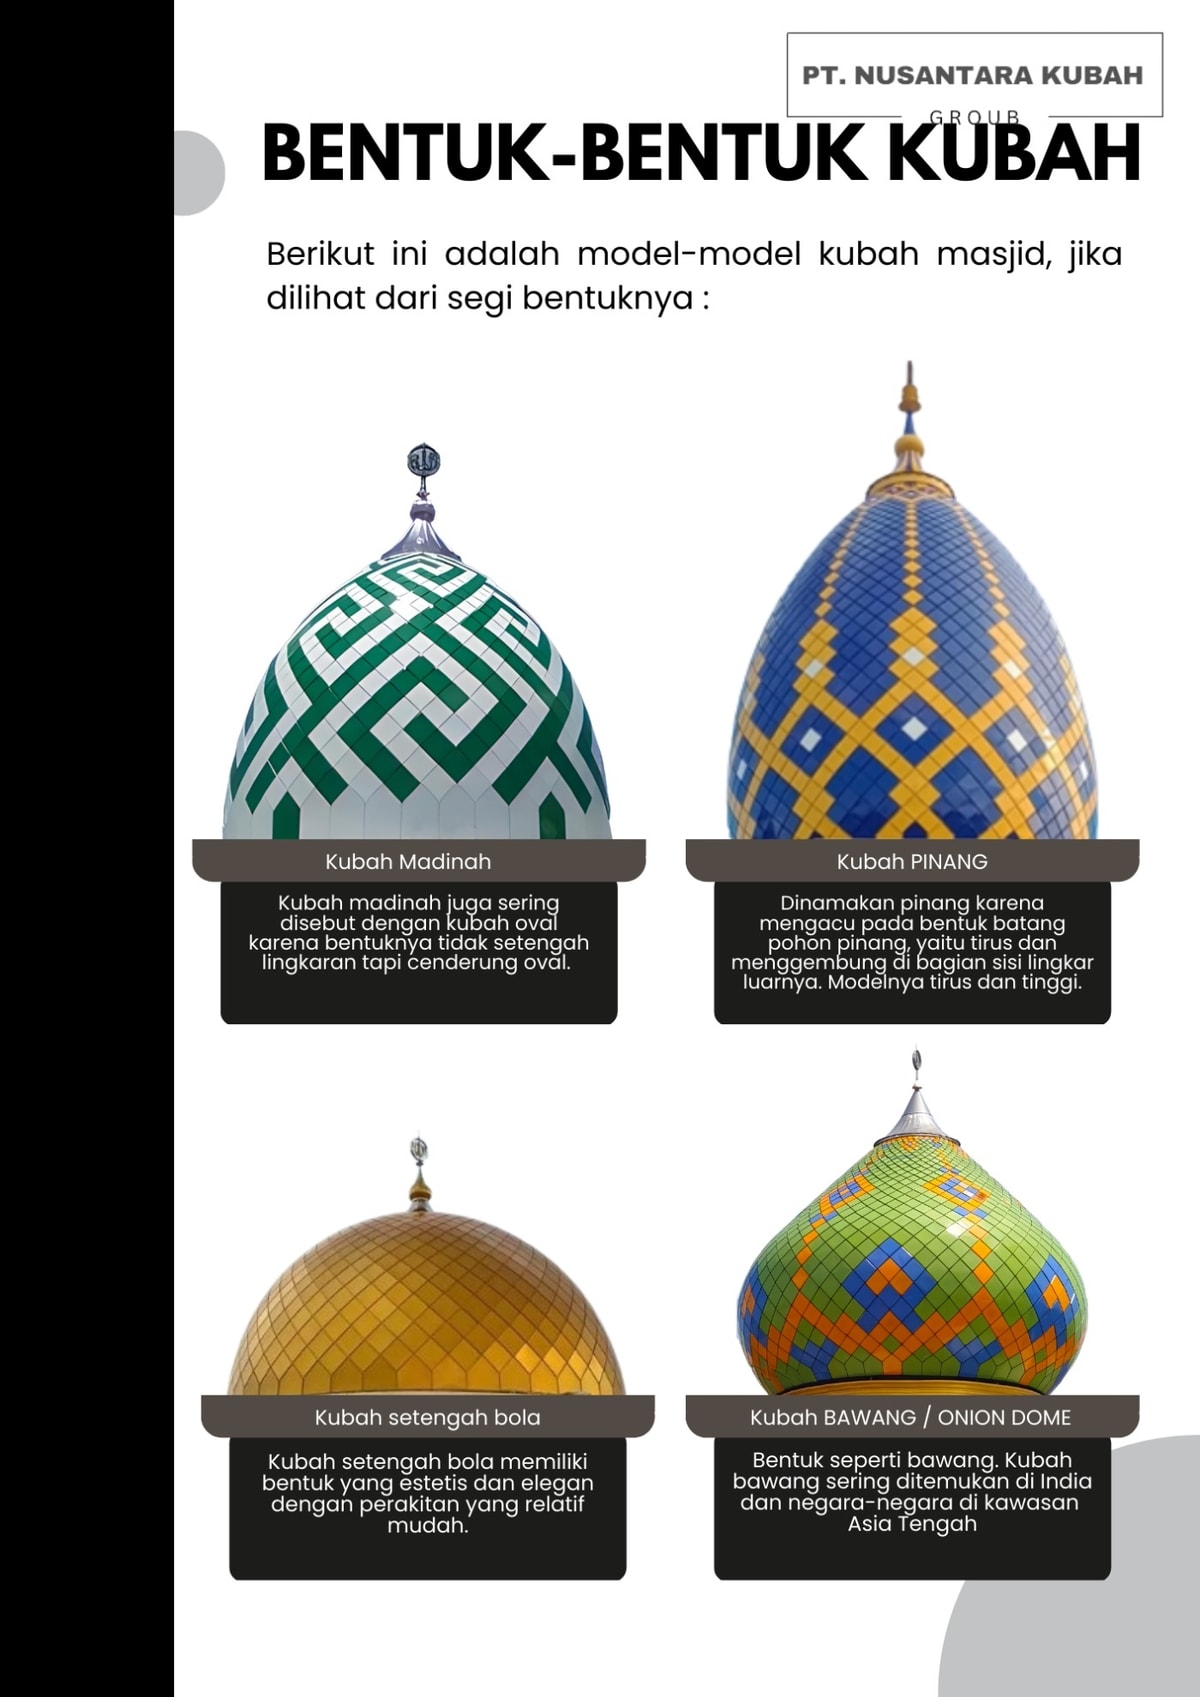 Bentuk gambar kubah masjid